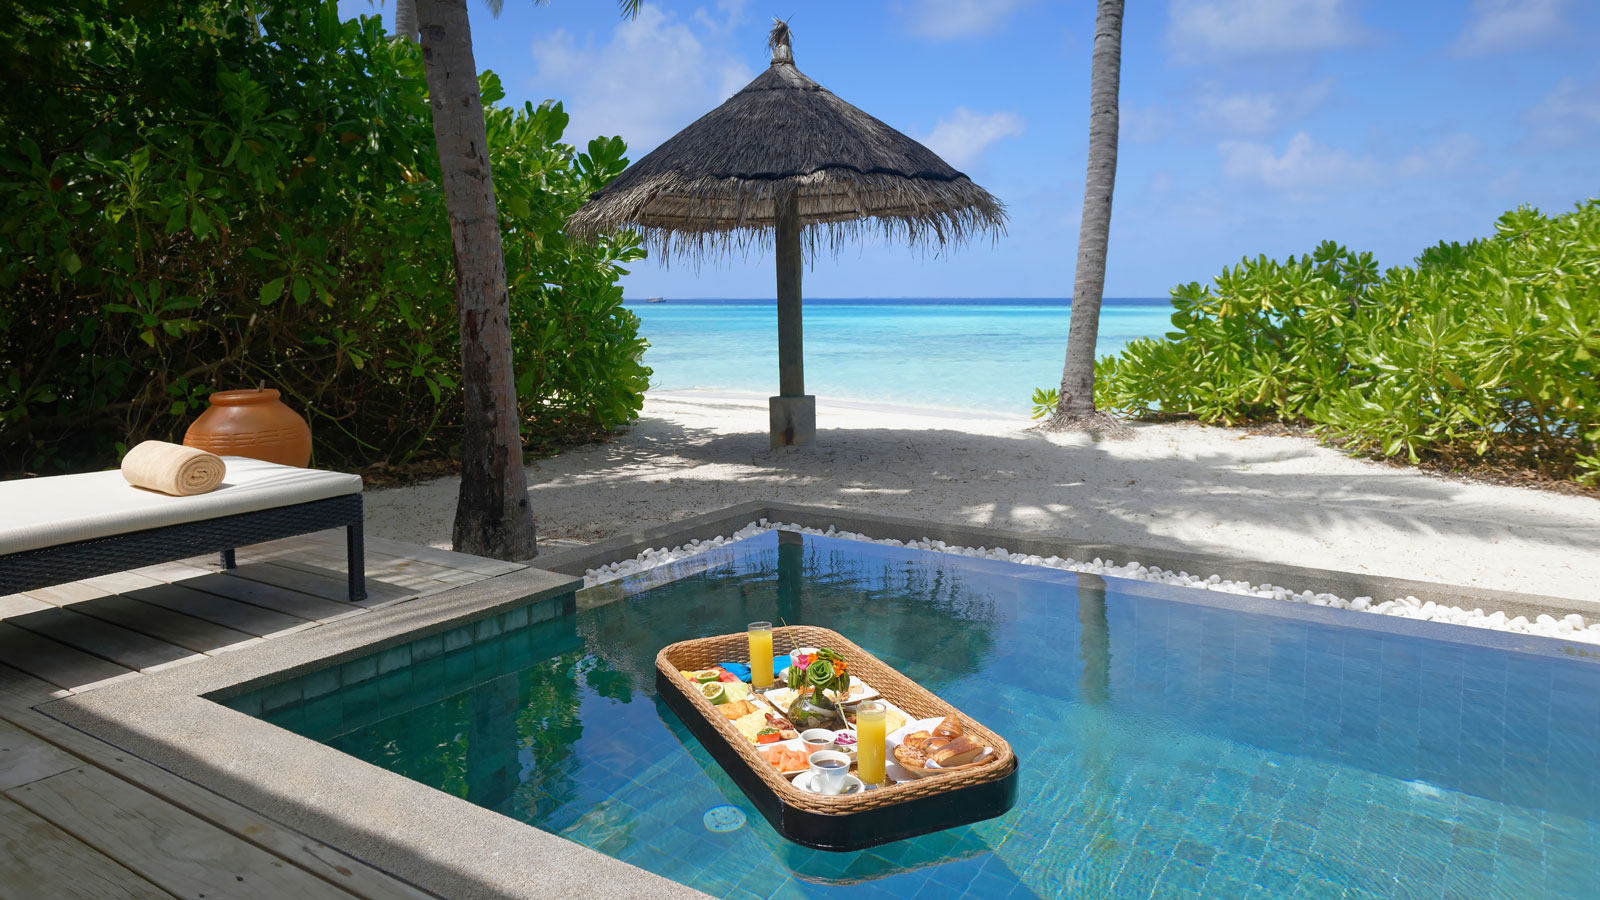 Stay - Amari Havodda Maldives